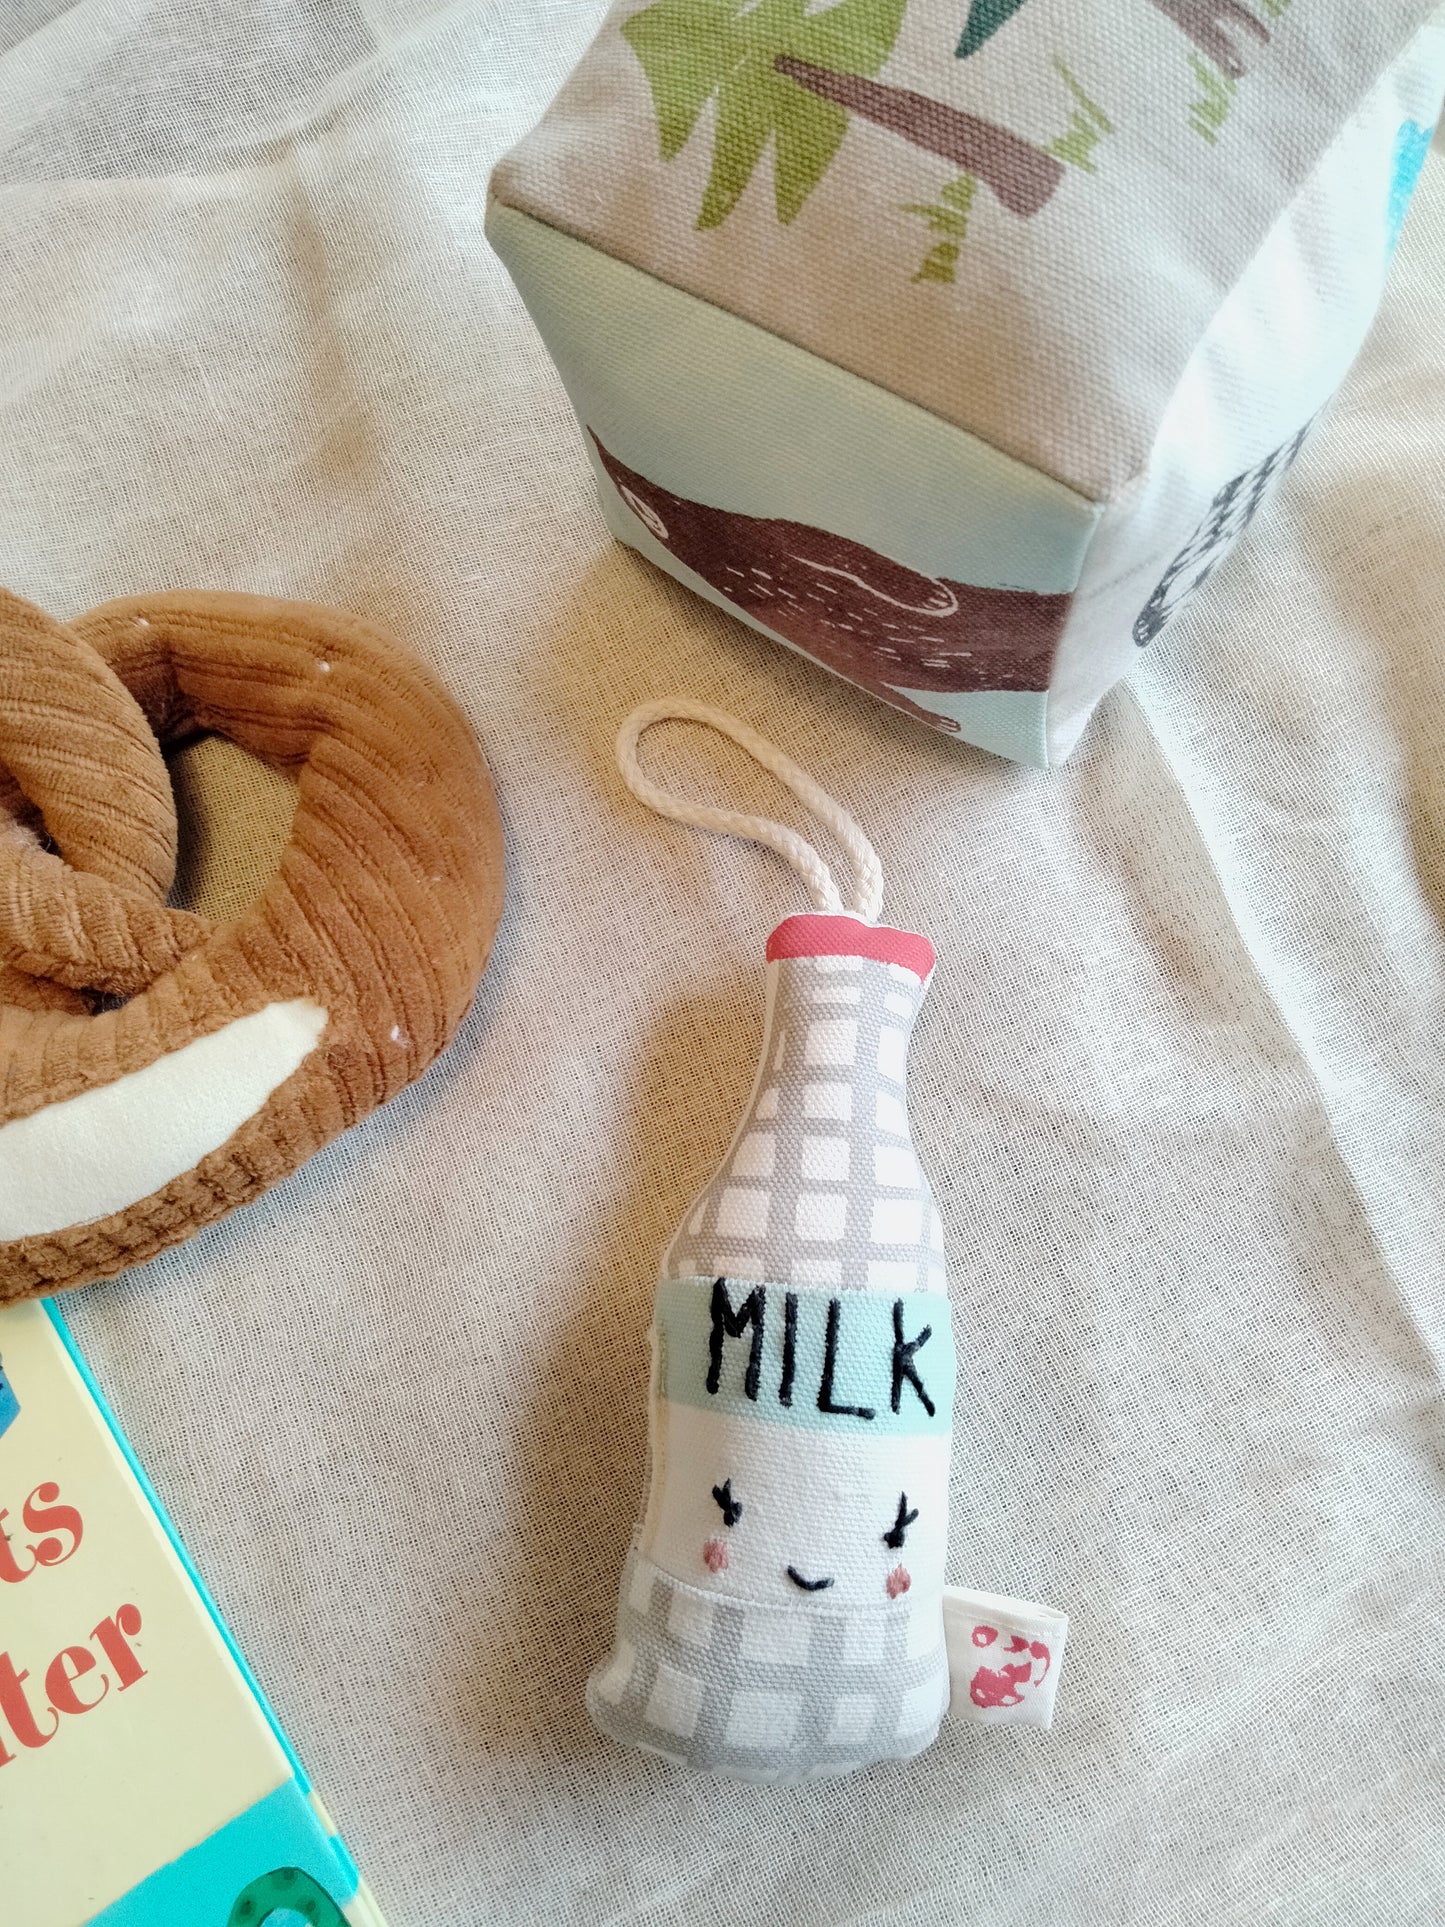 Rattle toy set -  pretzel and milk bottle